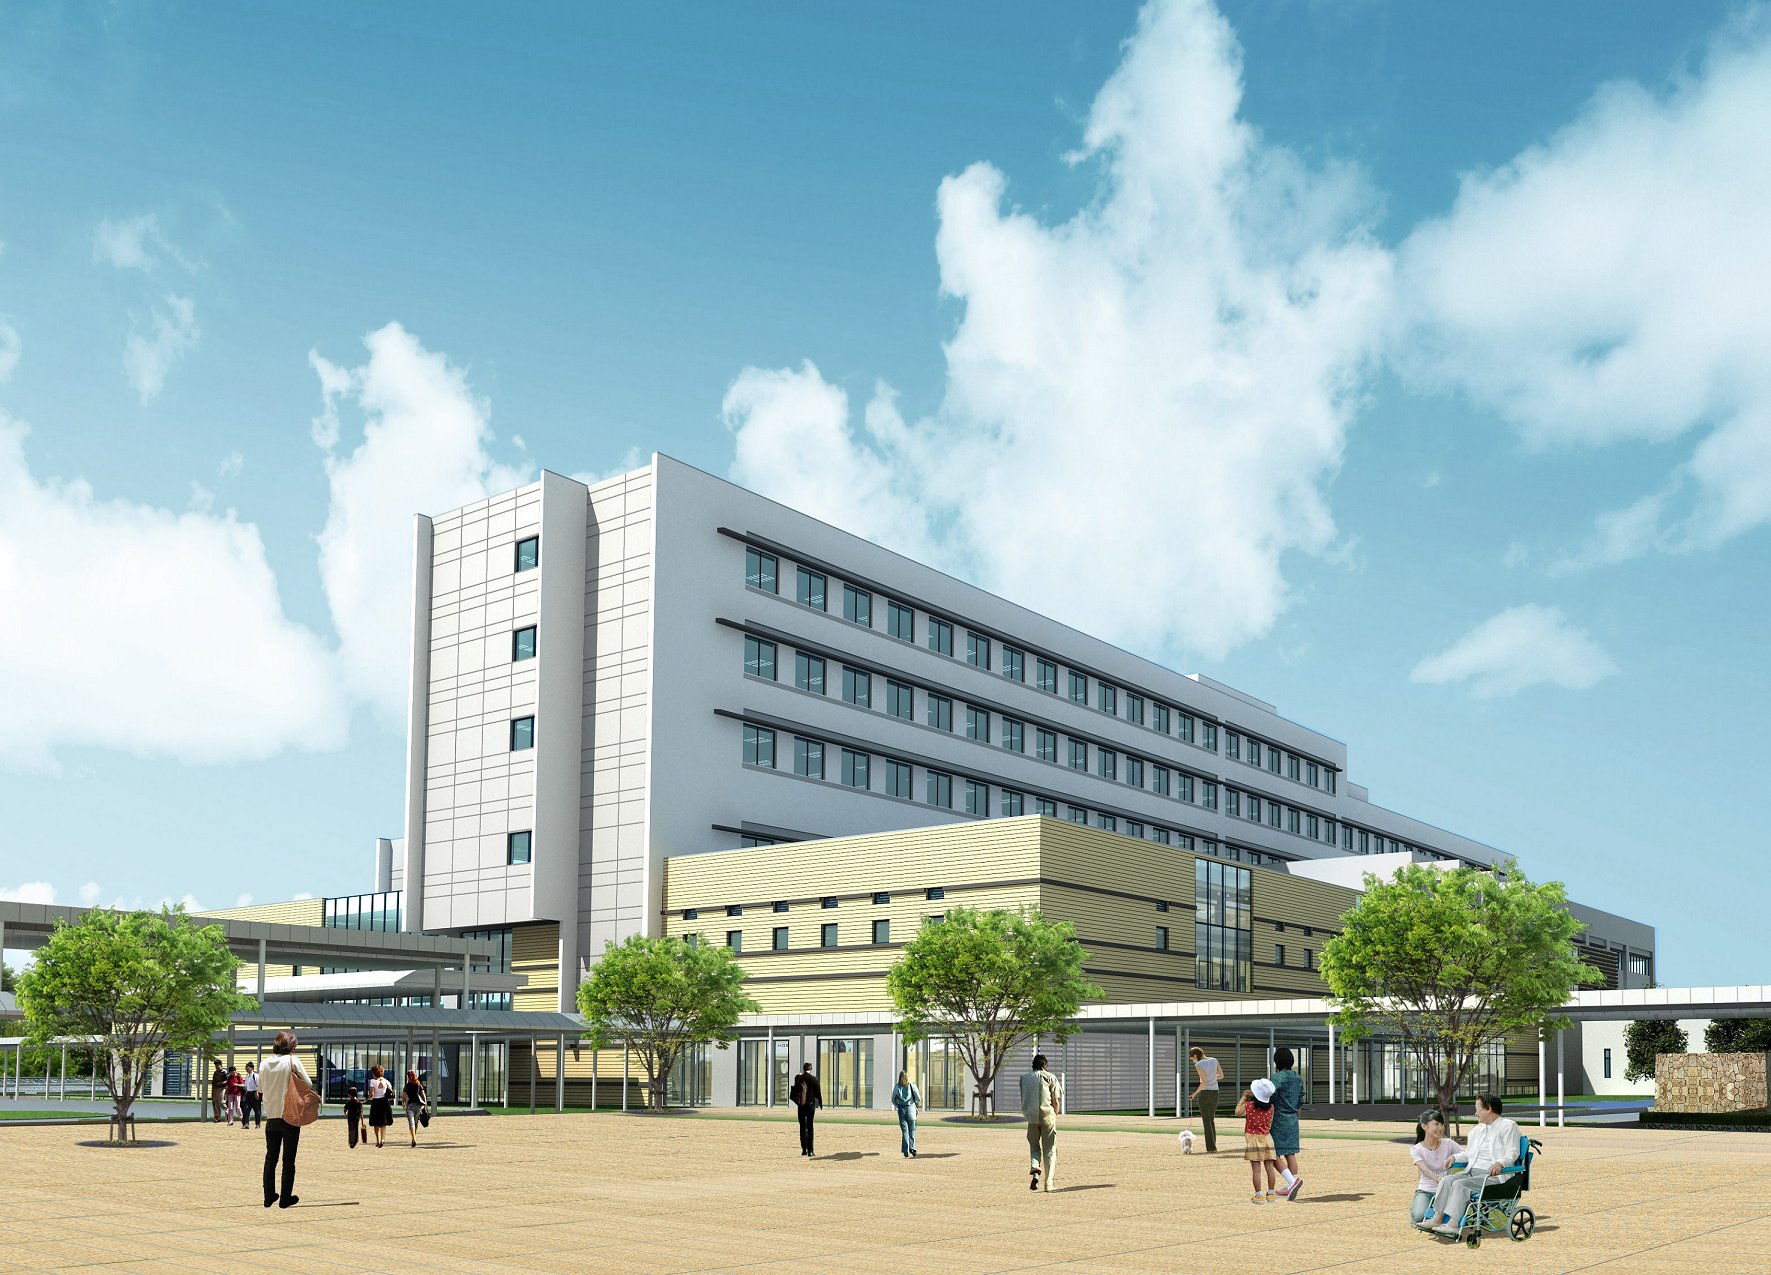 瀬戸の都・高松 on Twitter "【「高松市立みんなの病院」は、今年9月頃の開院を予定！】 高松市民病院と香川診療所を移転統合する